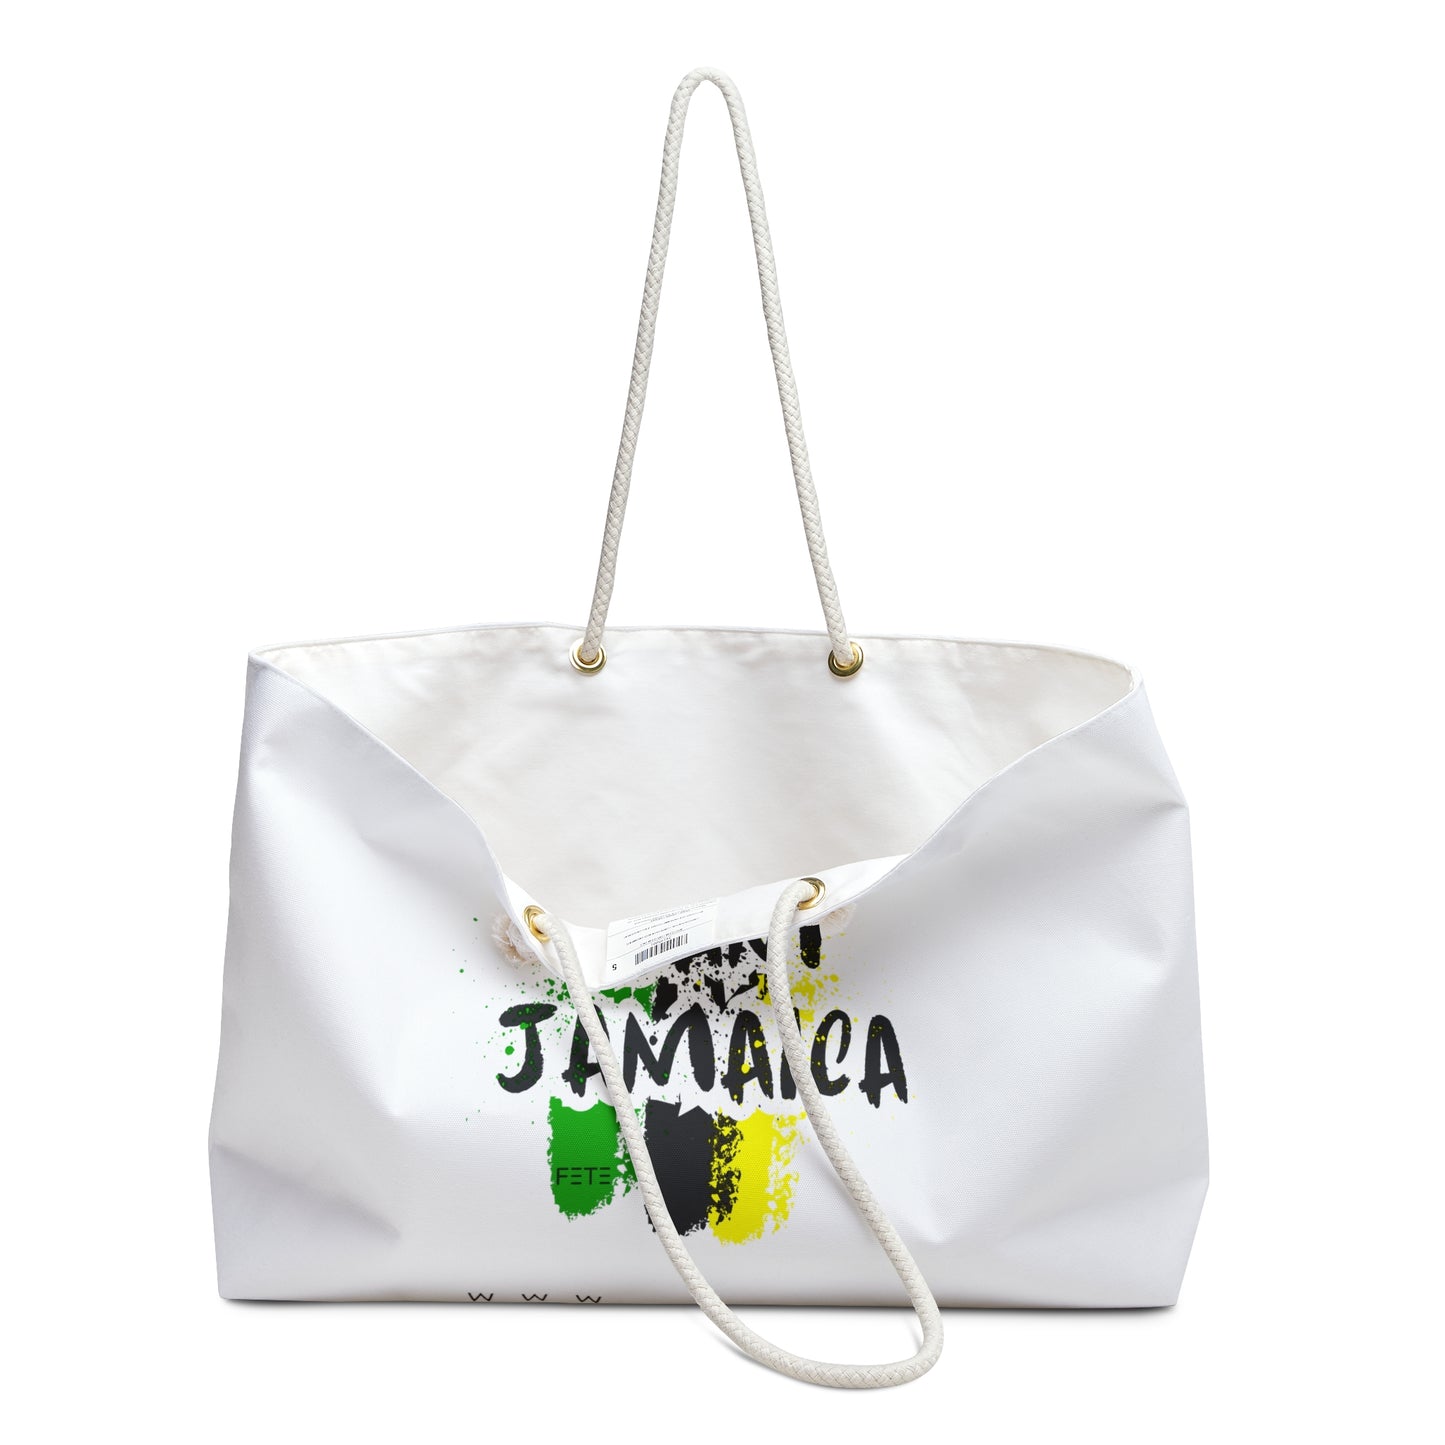 Team Jamaica Weekender Bag